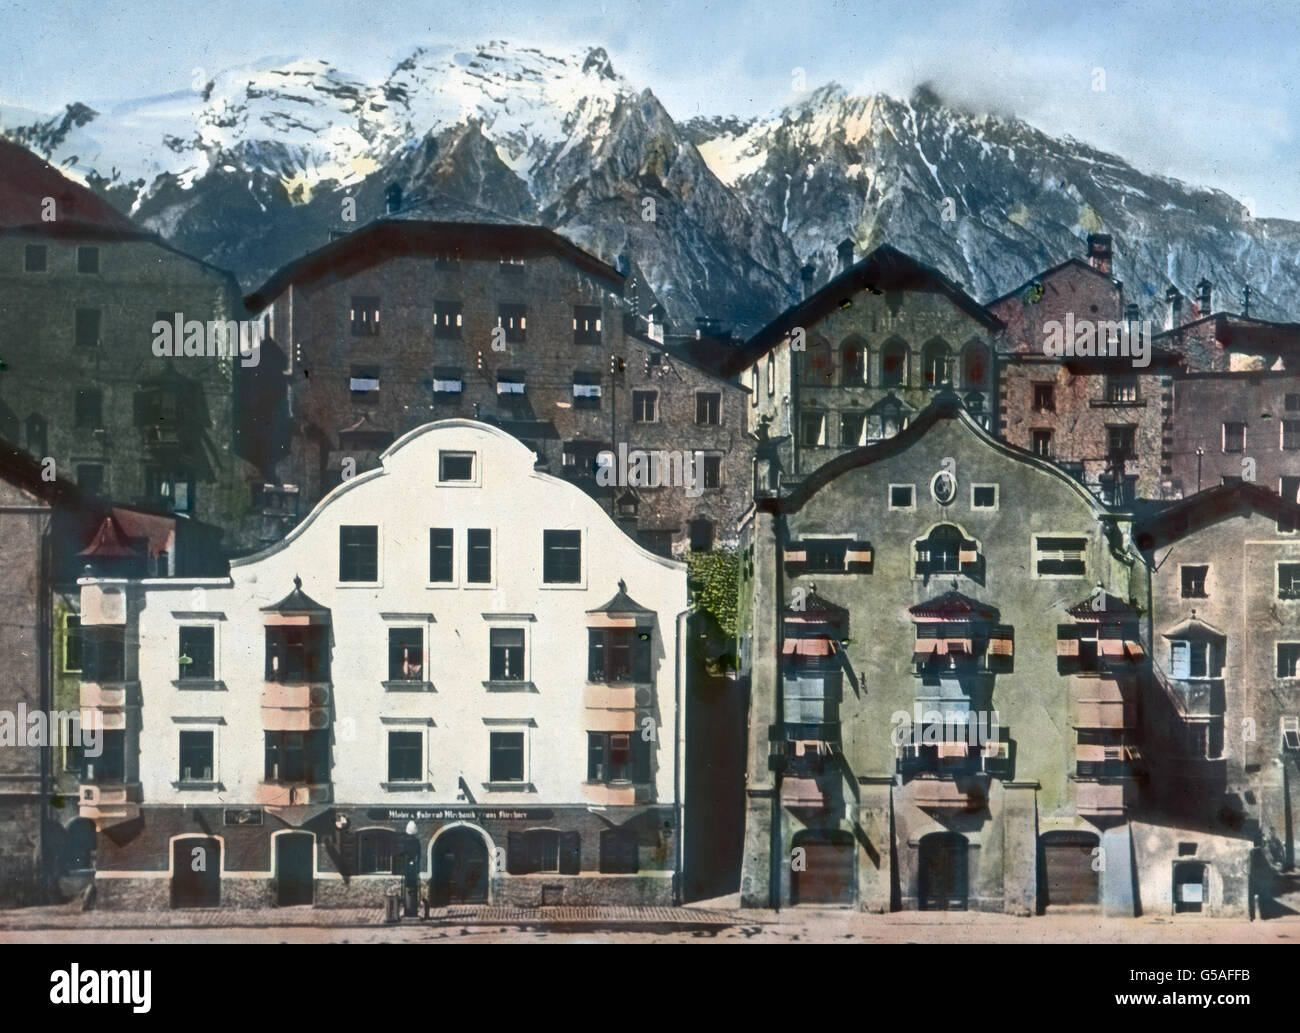 Inmitten der Tuxer Schieferalpen liegt unweit Innsbruck die alte Stadt Hall in Tirol, ein bekanntes Solbad an der Bahn Kufstein-Innsbruck. Das Wort Hall bedeutet übrigens Salz. Wo das Wort selbständig oder in einer Verbindung angewandt wird, ist sicher ein Salzvorkommen nachweisbar. Hall in Tirol war durch seine ergiebige Saline im Mittelalter ein behäbig-wohlhabender Ort, wovon noch diese breit hingelagerten Giebelhäuser künden. Auch heute macht die Stadt, von der aus viele herrliche Berggebiete erschlossen werden, einen anheimelnd freundlichen Eindruck. Austria, 1910s, 1920s, 20th century, a Stock Photo